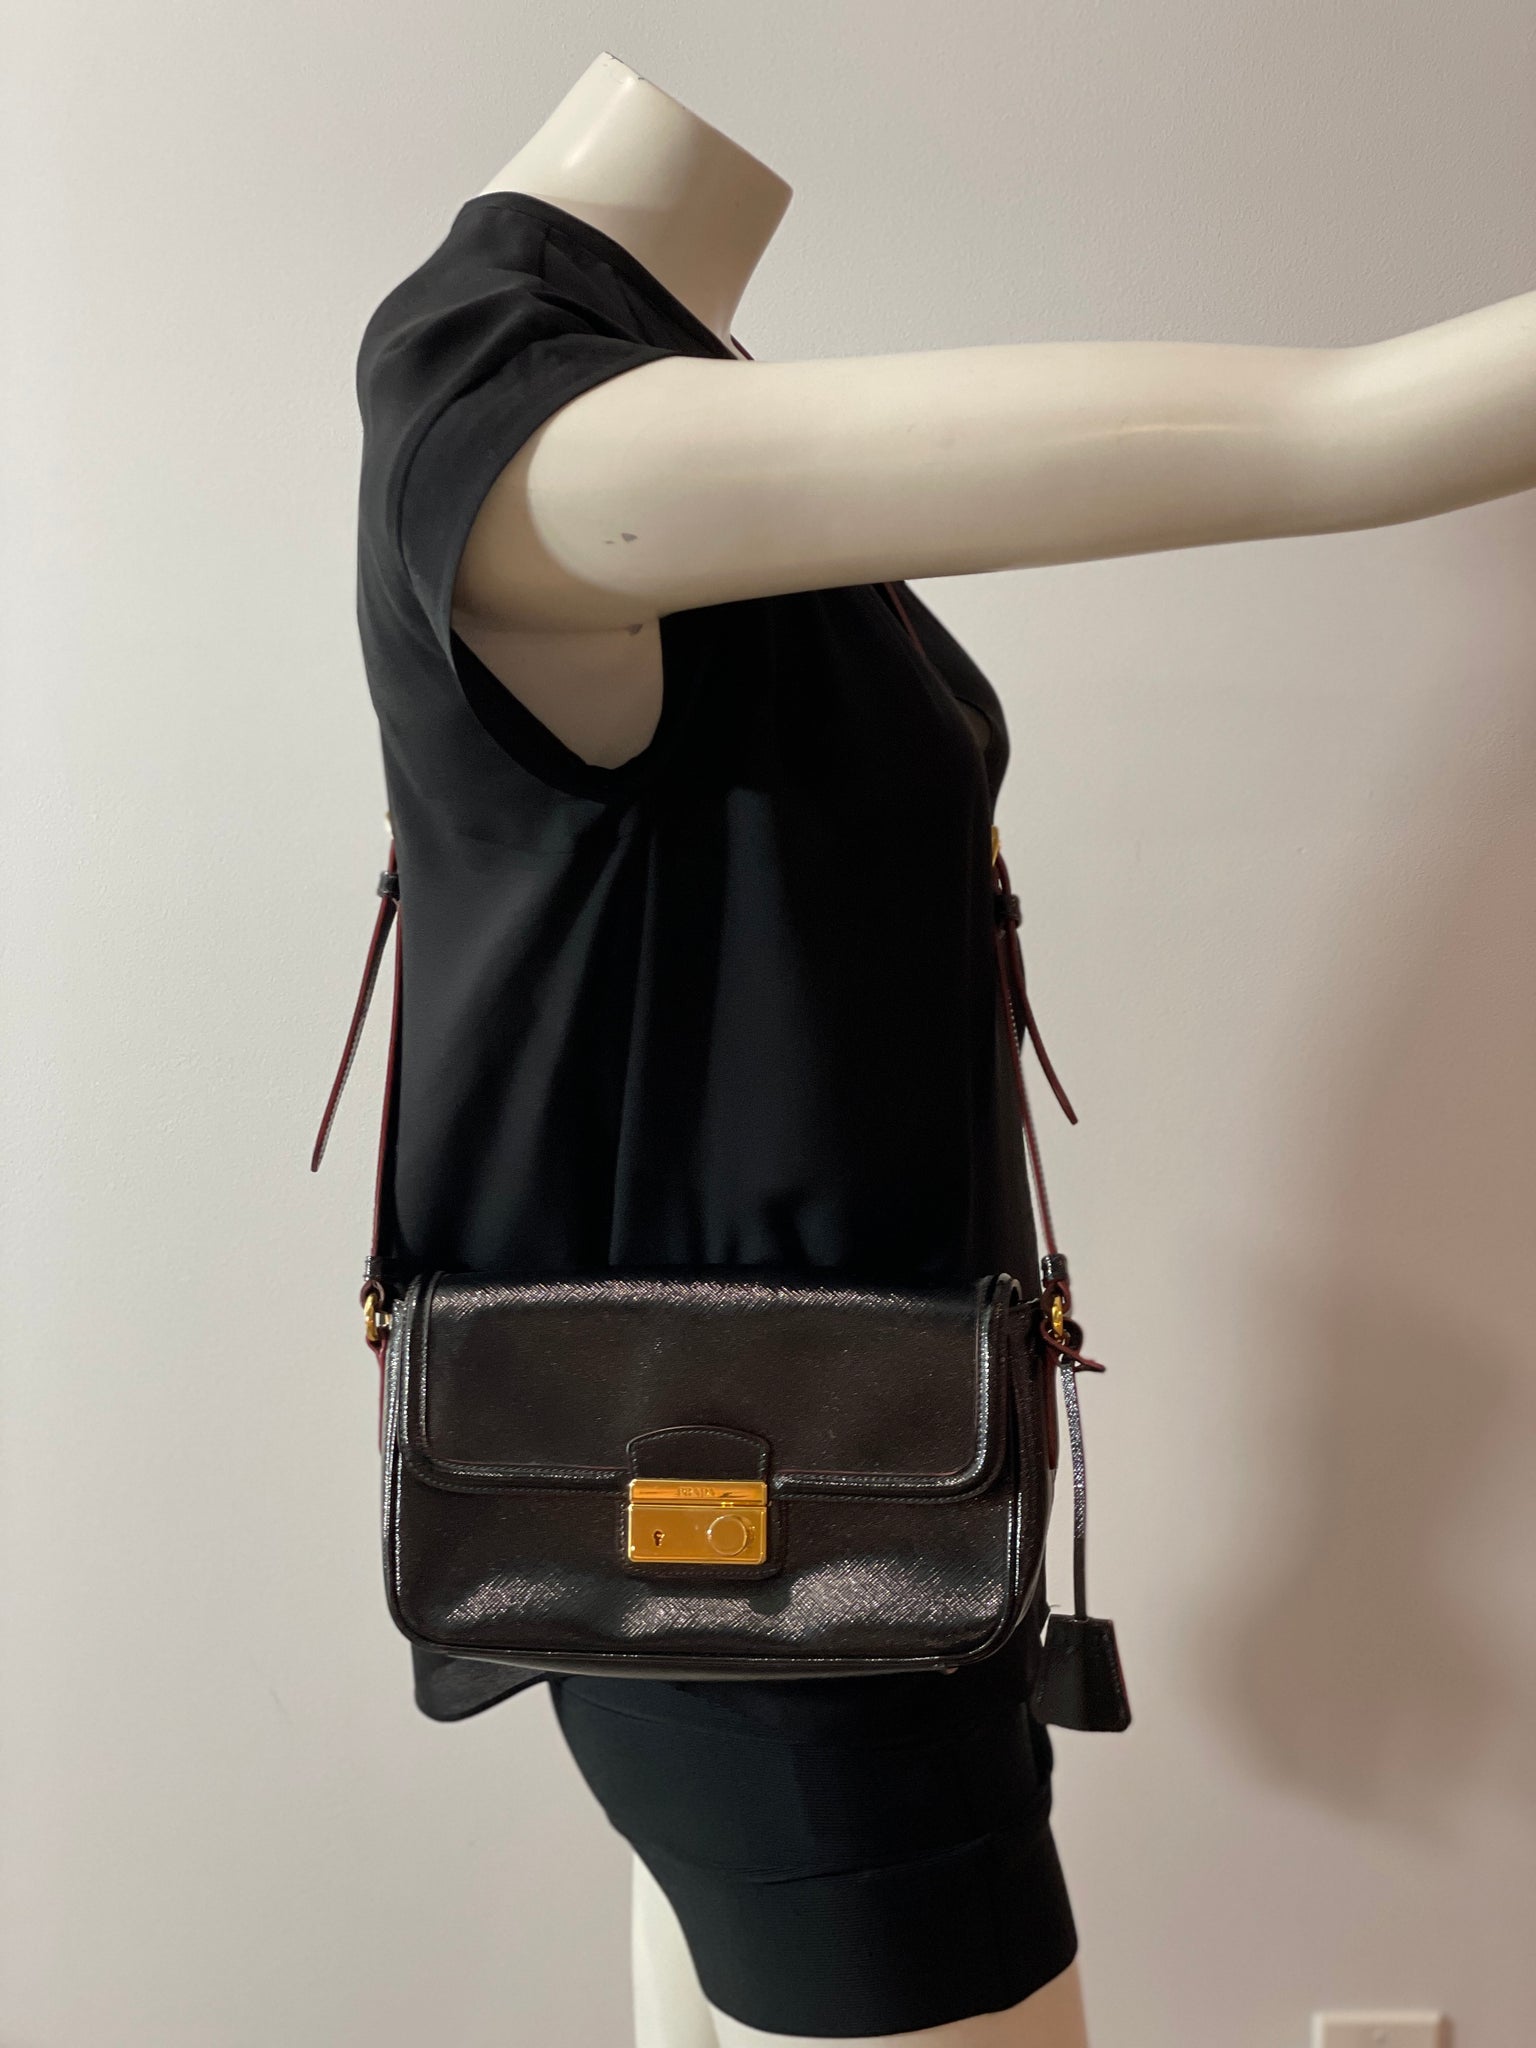 Prada Black Saffiano Leather Crossbody Bag 1BD239 - Yoogi's Closet